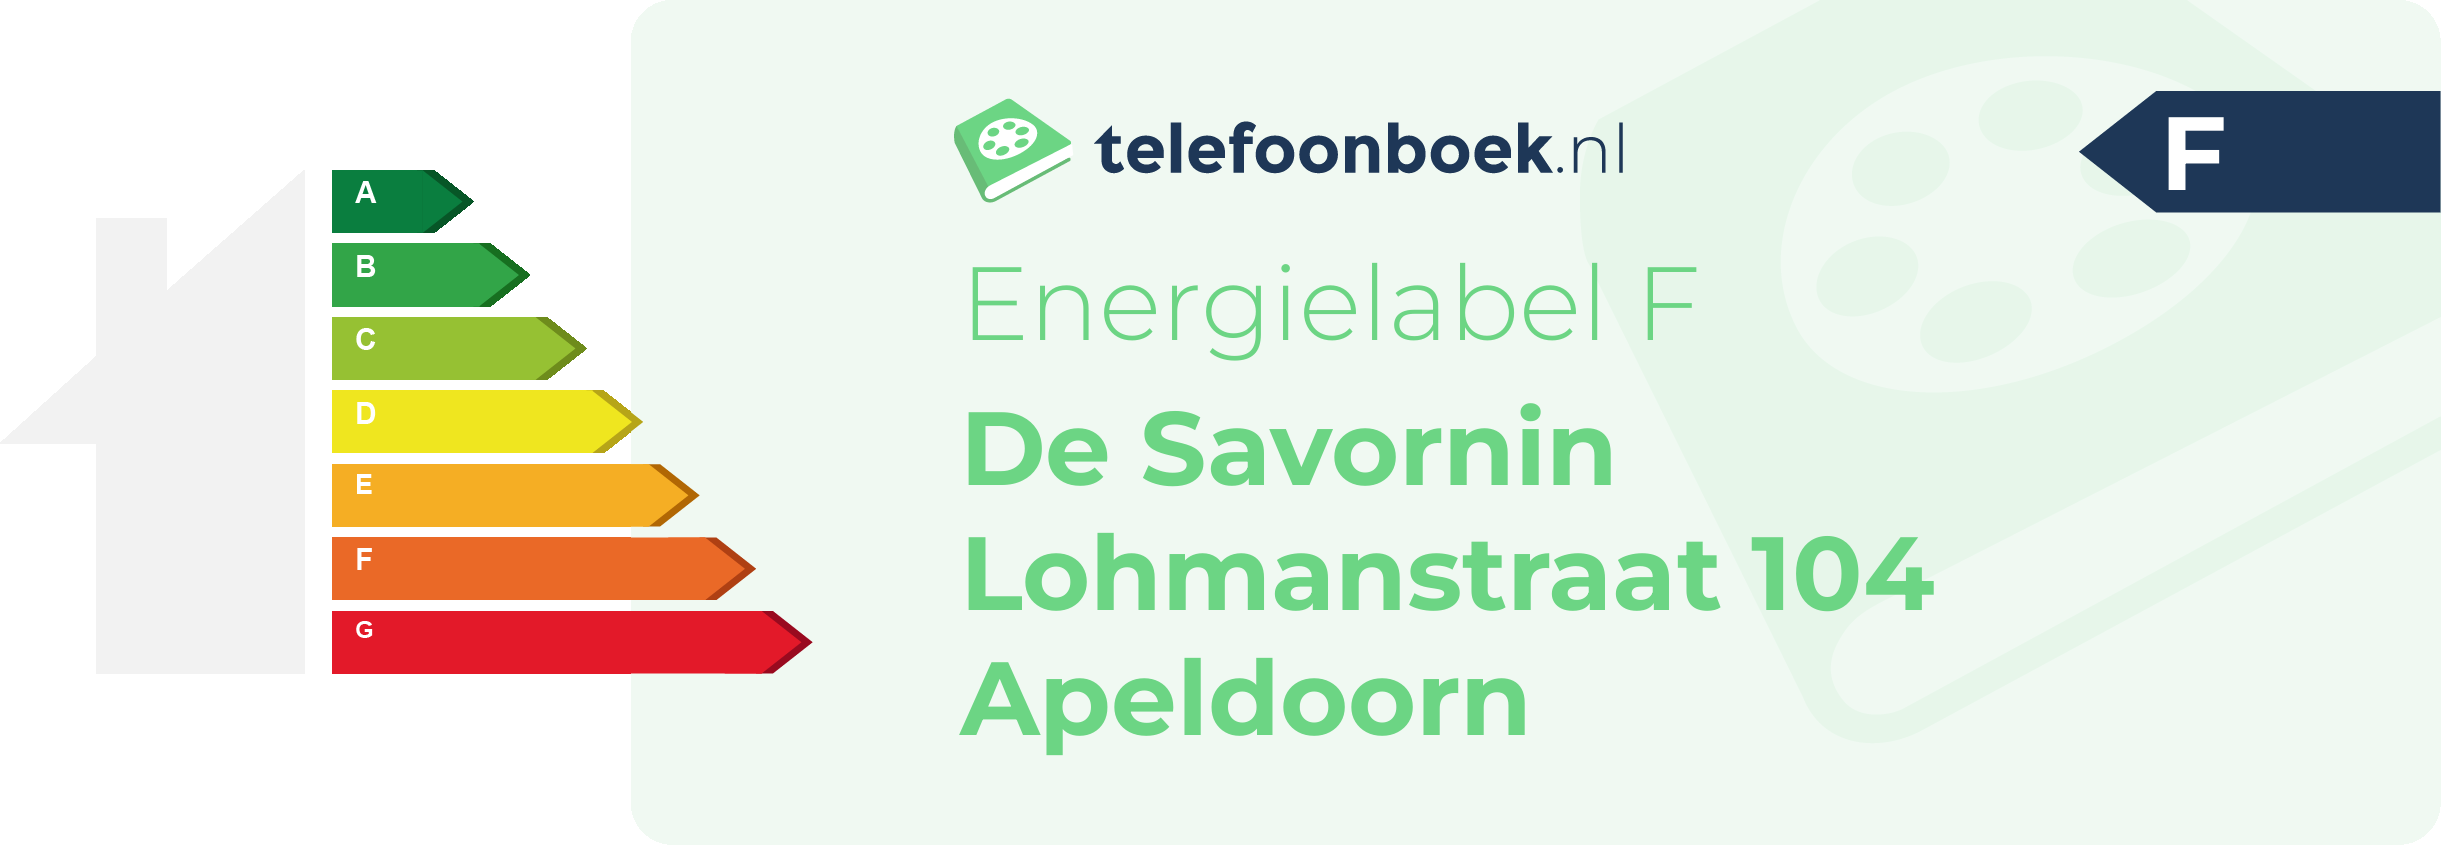 Energielabel De Savornin Lohmanstraat 104 Apeldoorn